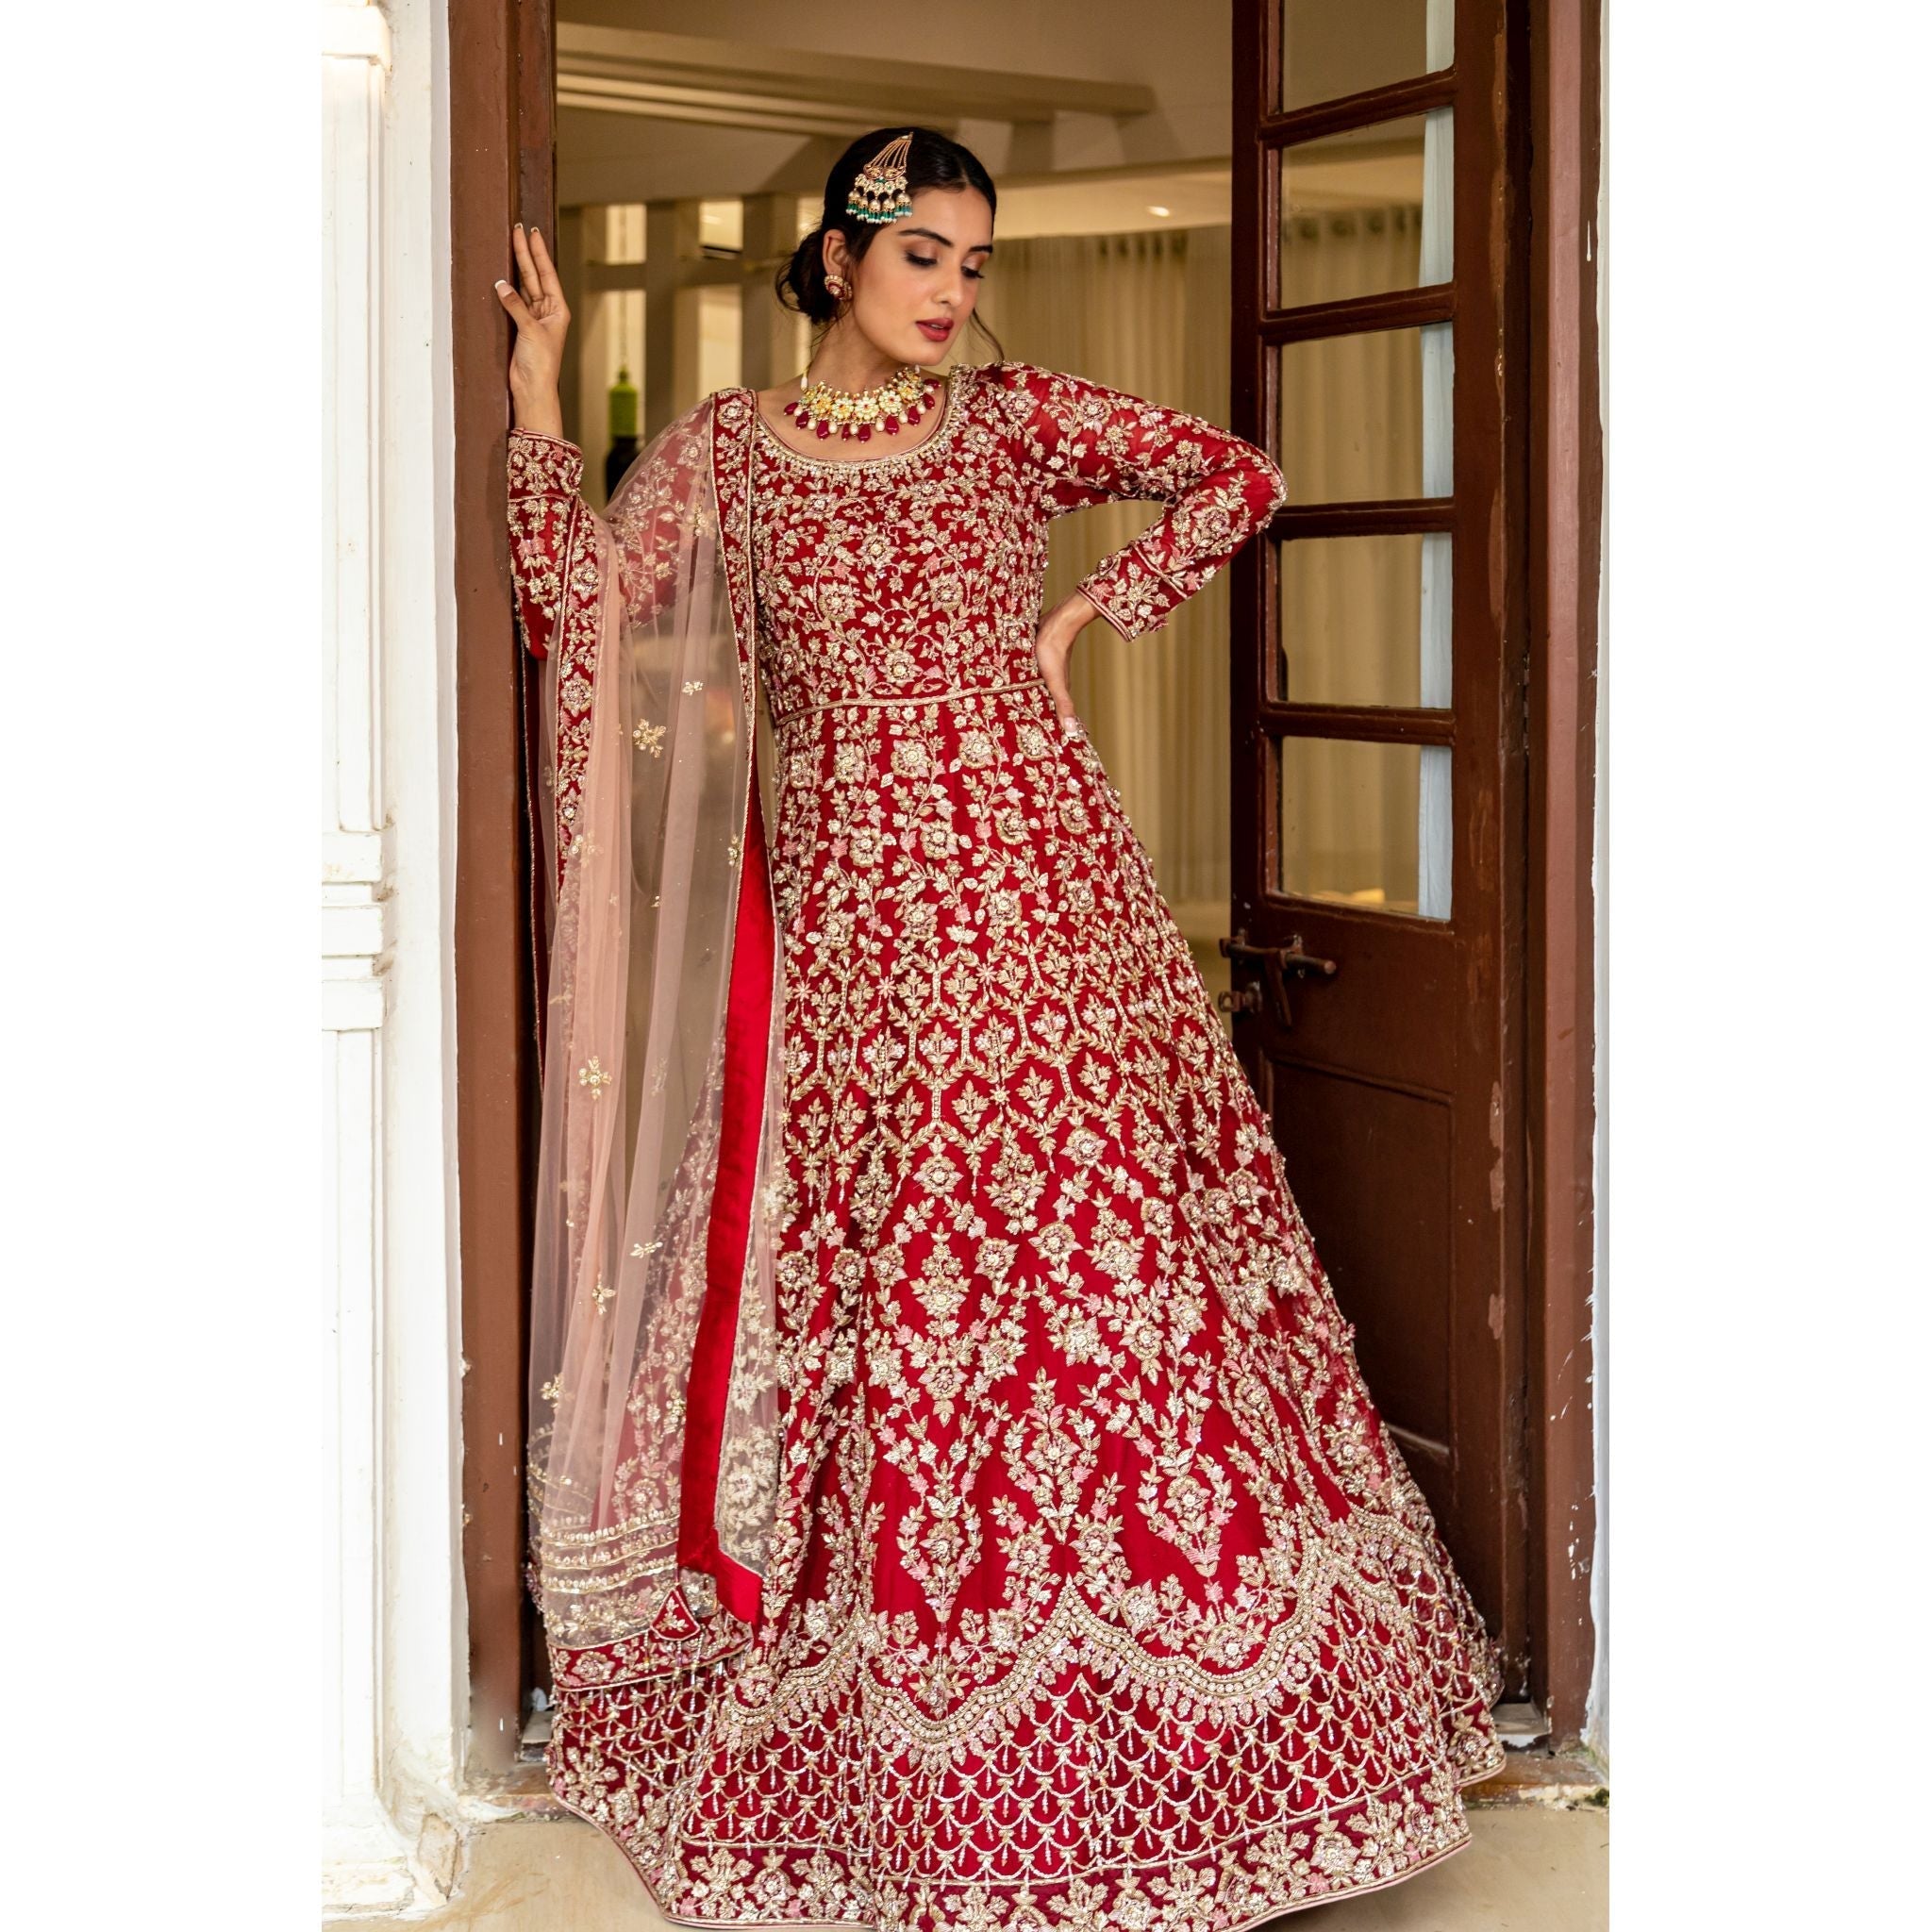 Red And Gold Bridal Anarkali Set - Indian Designer Bridal Wedding Outfit